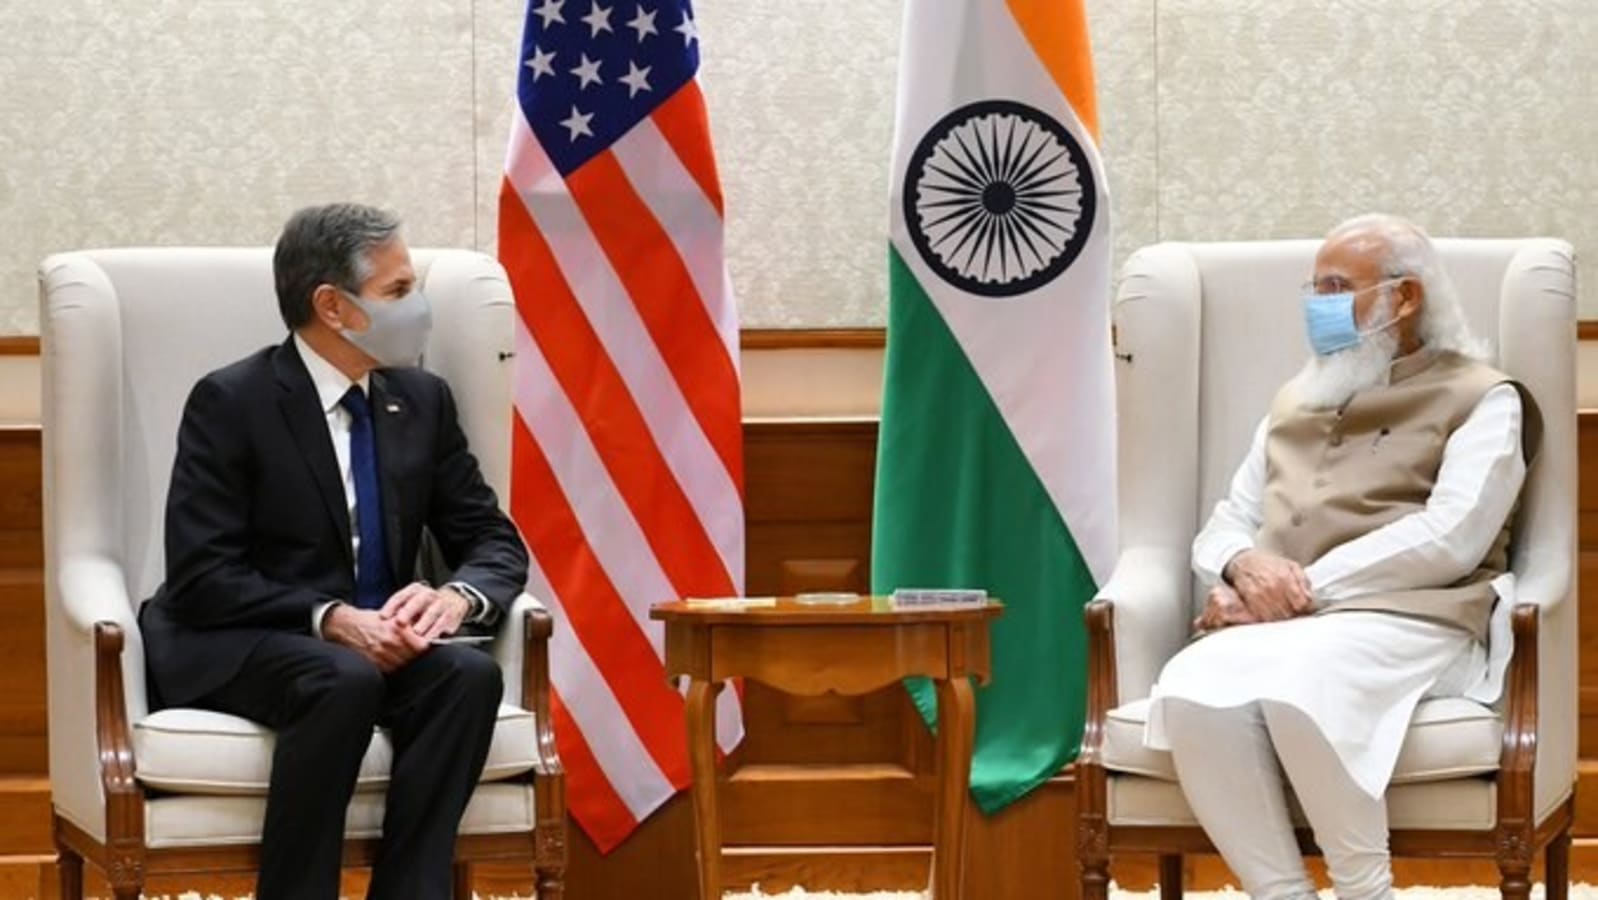 India-US bond over Quad, China, America sheds reticence over Dalai Lama